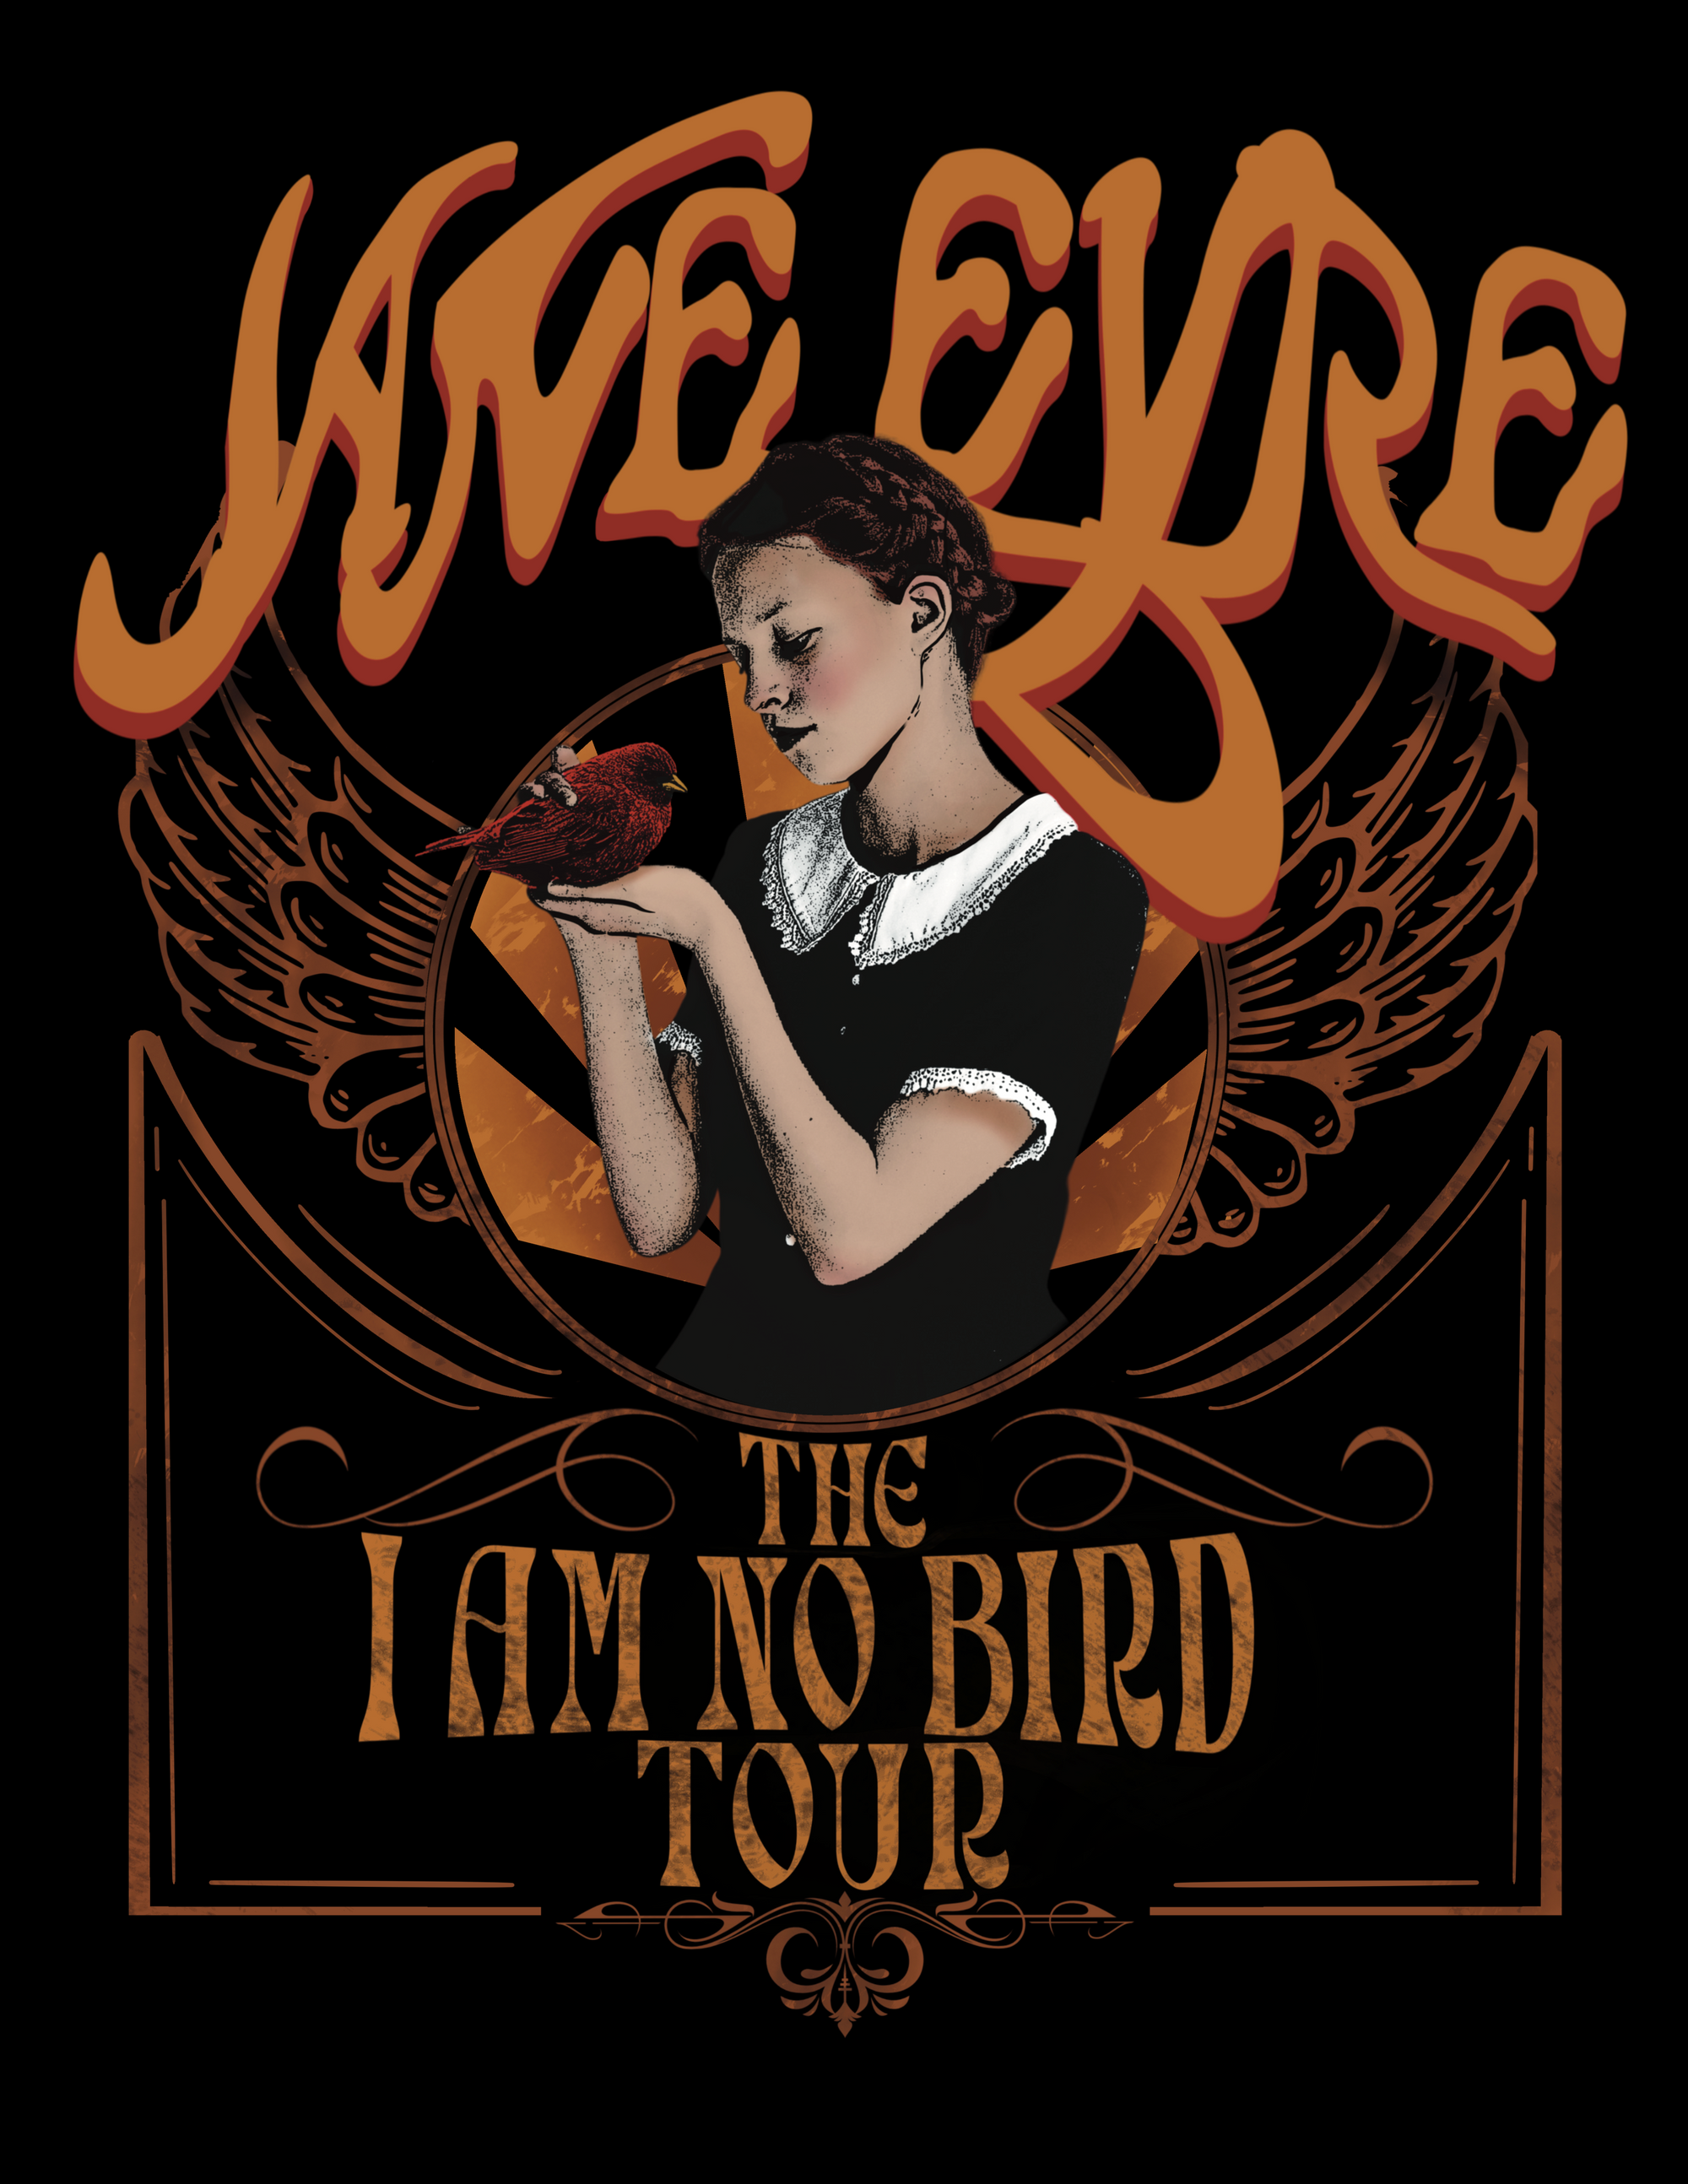 Jane Eyre Tour Tee